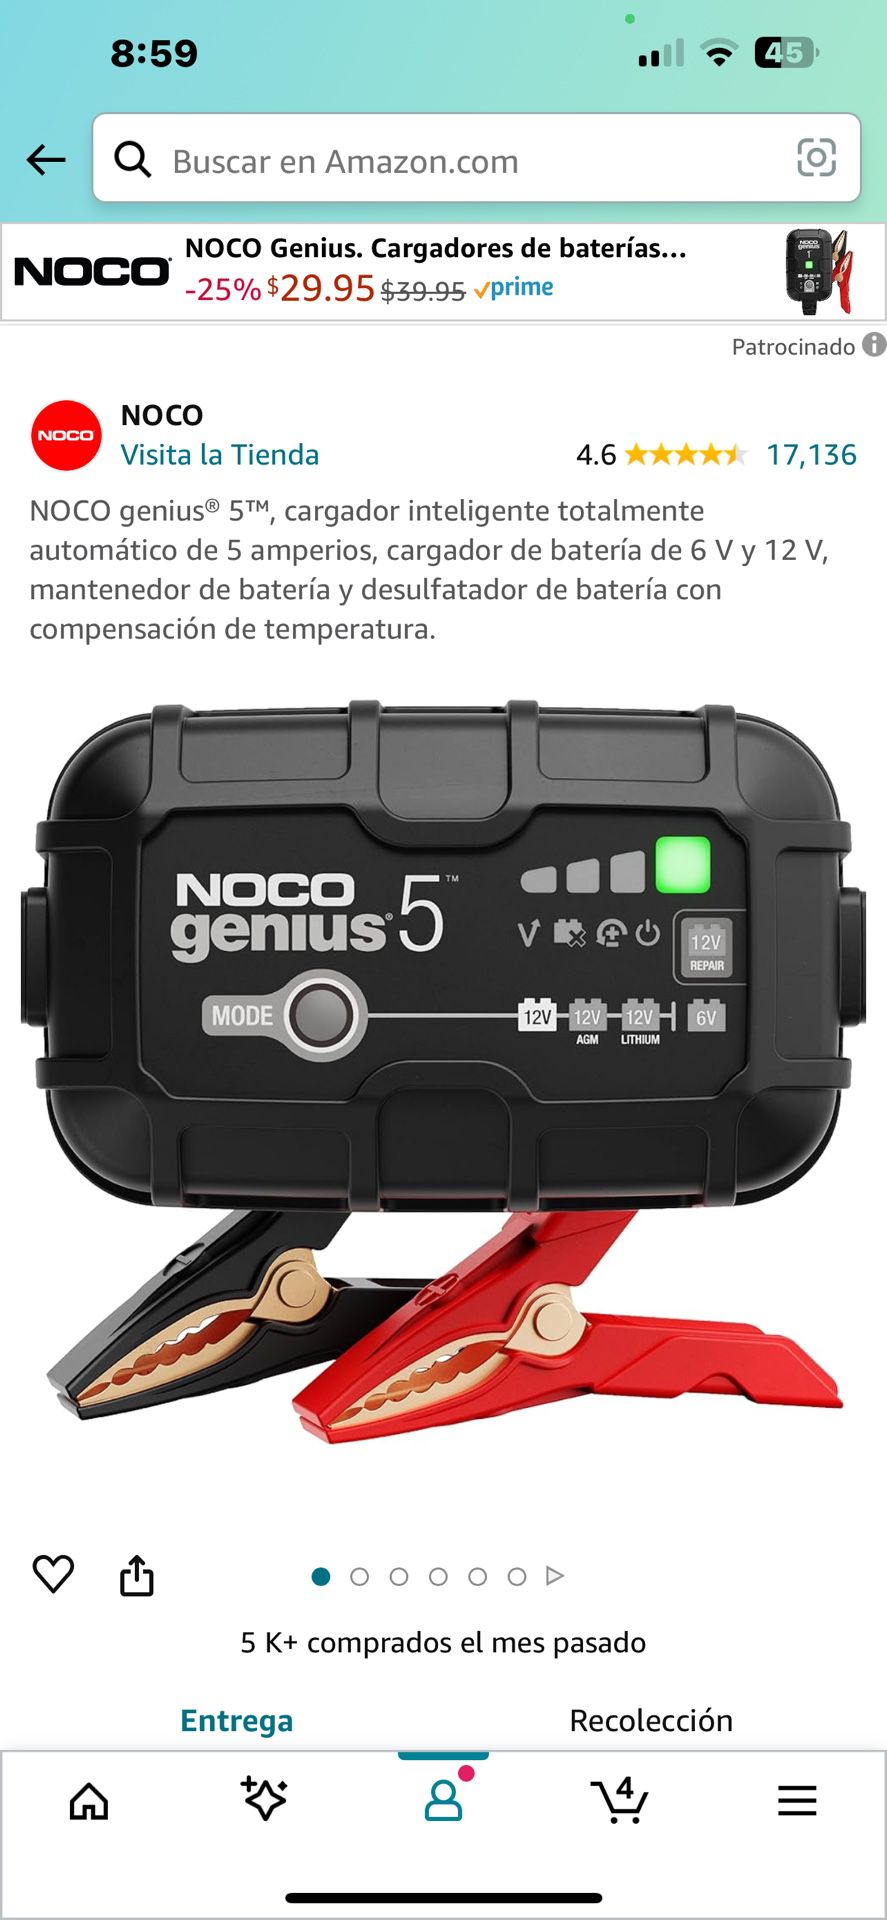 NOCO genius® 5™, cargador inteligente totalmente automático de 5 amperios